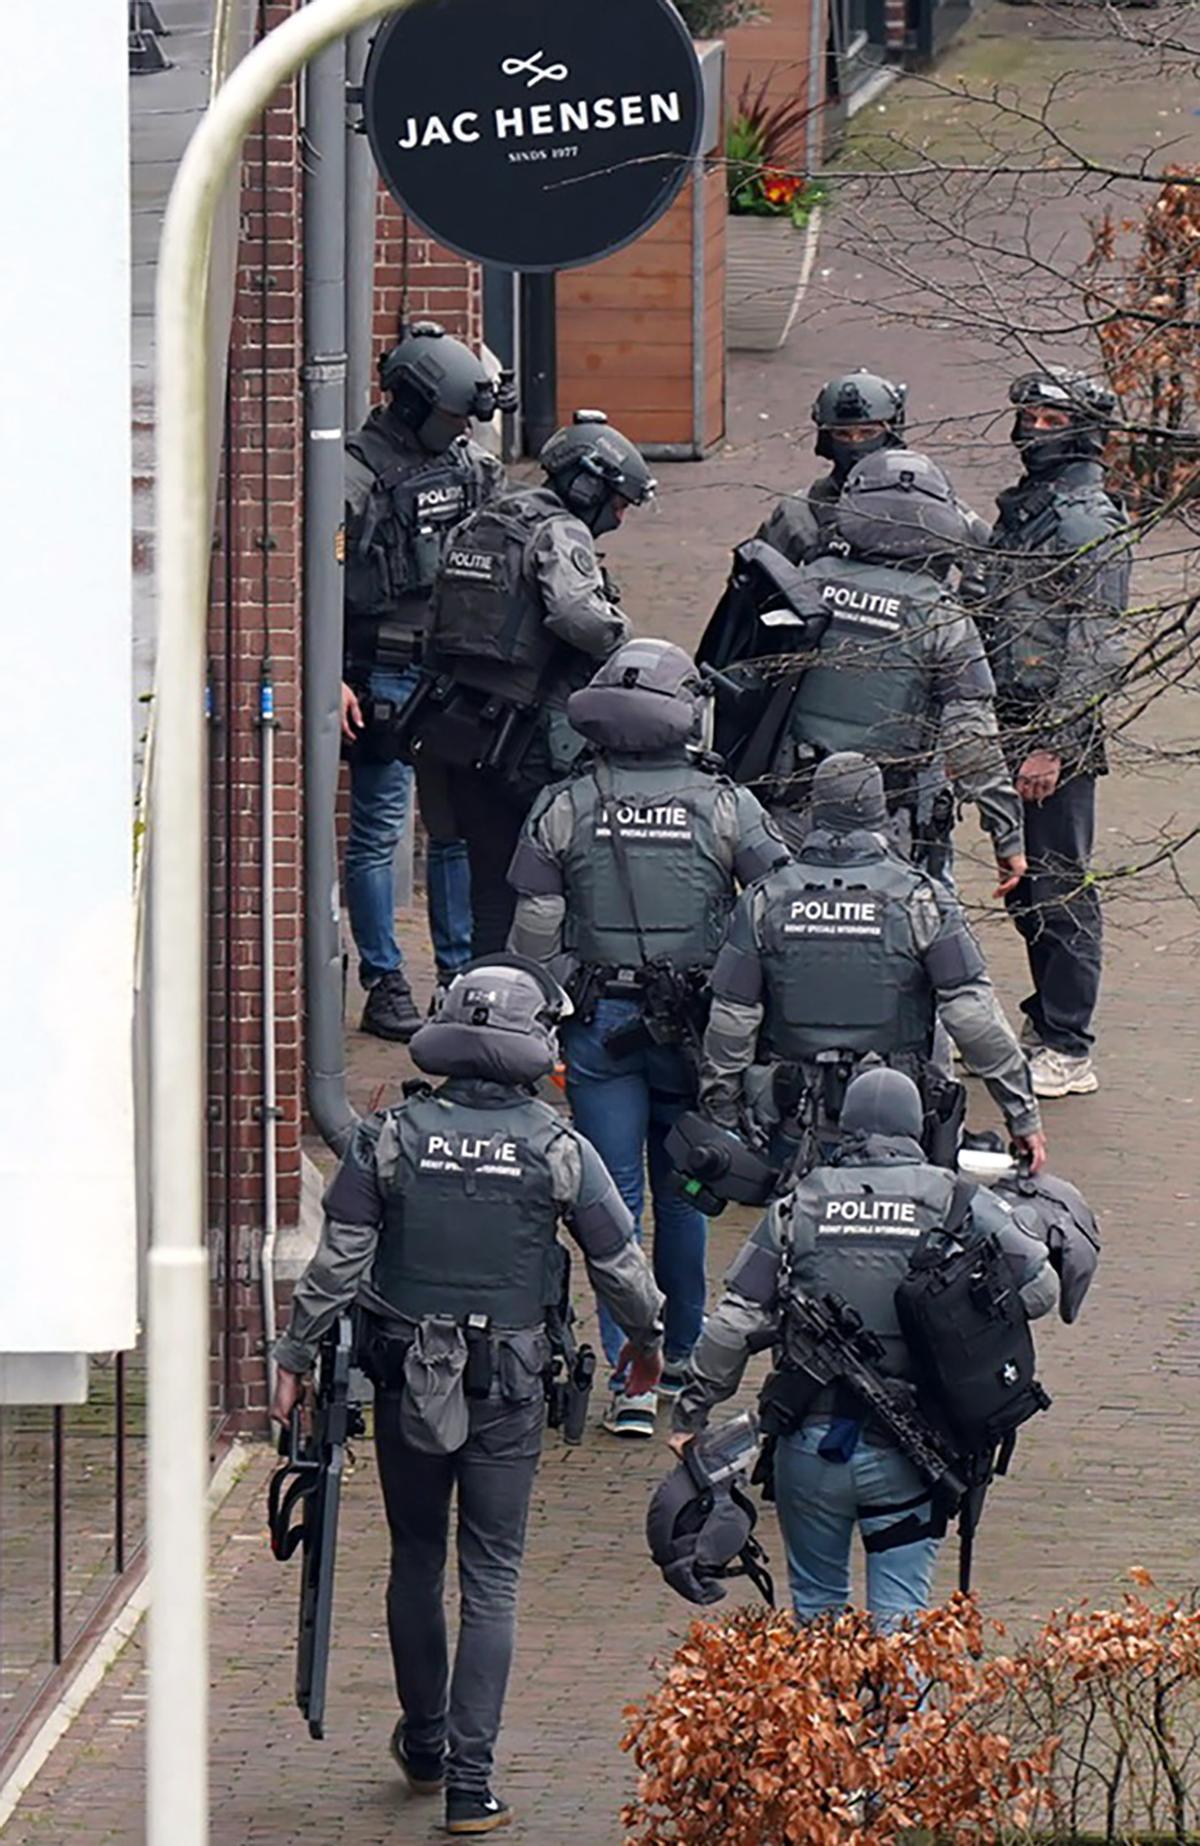 Varias personas son tomadas como rehenes en una ciudad de Países Bajos